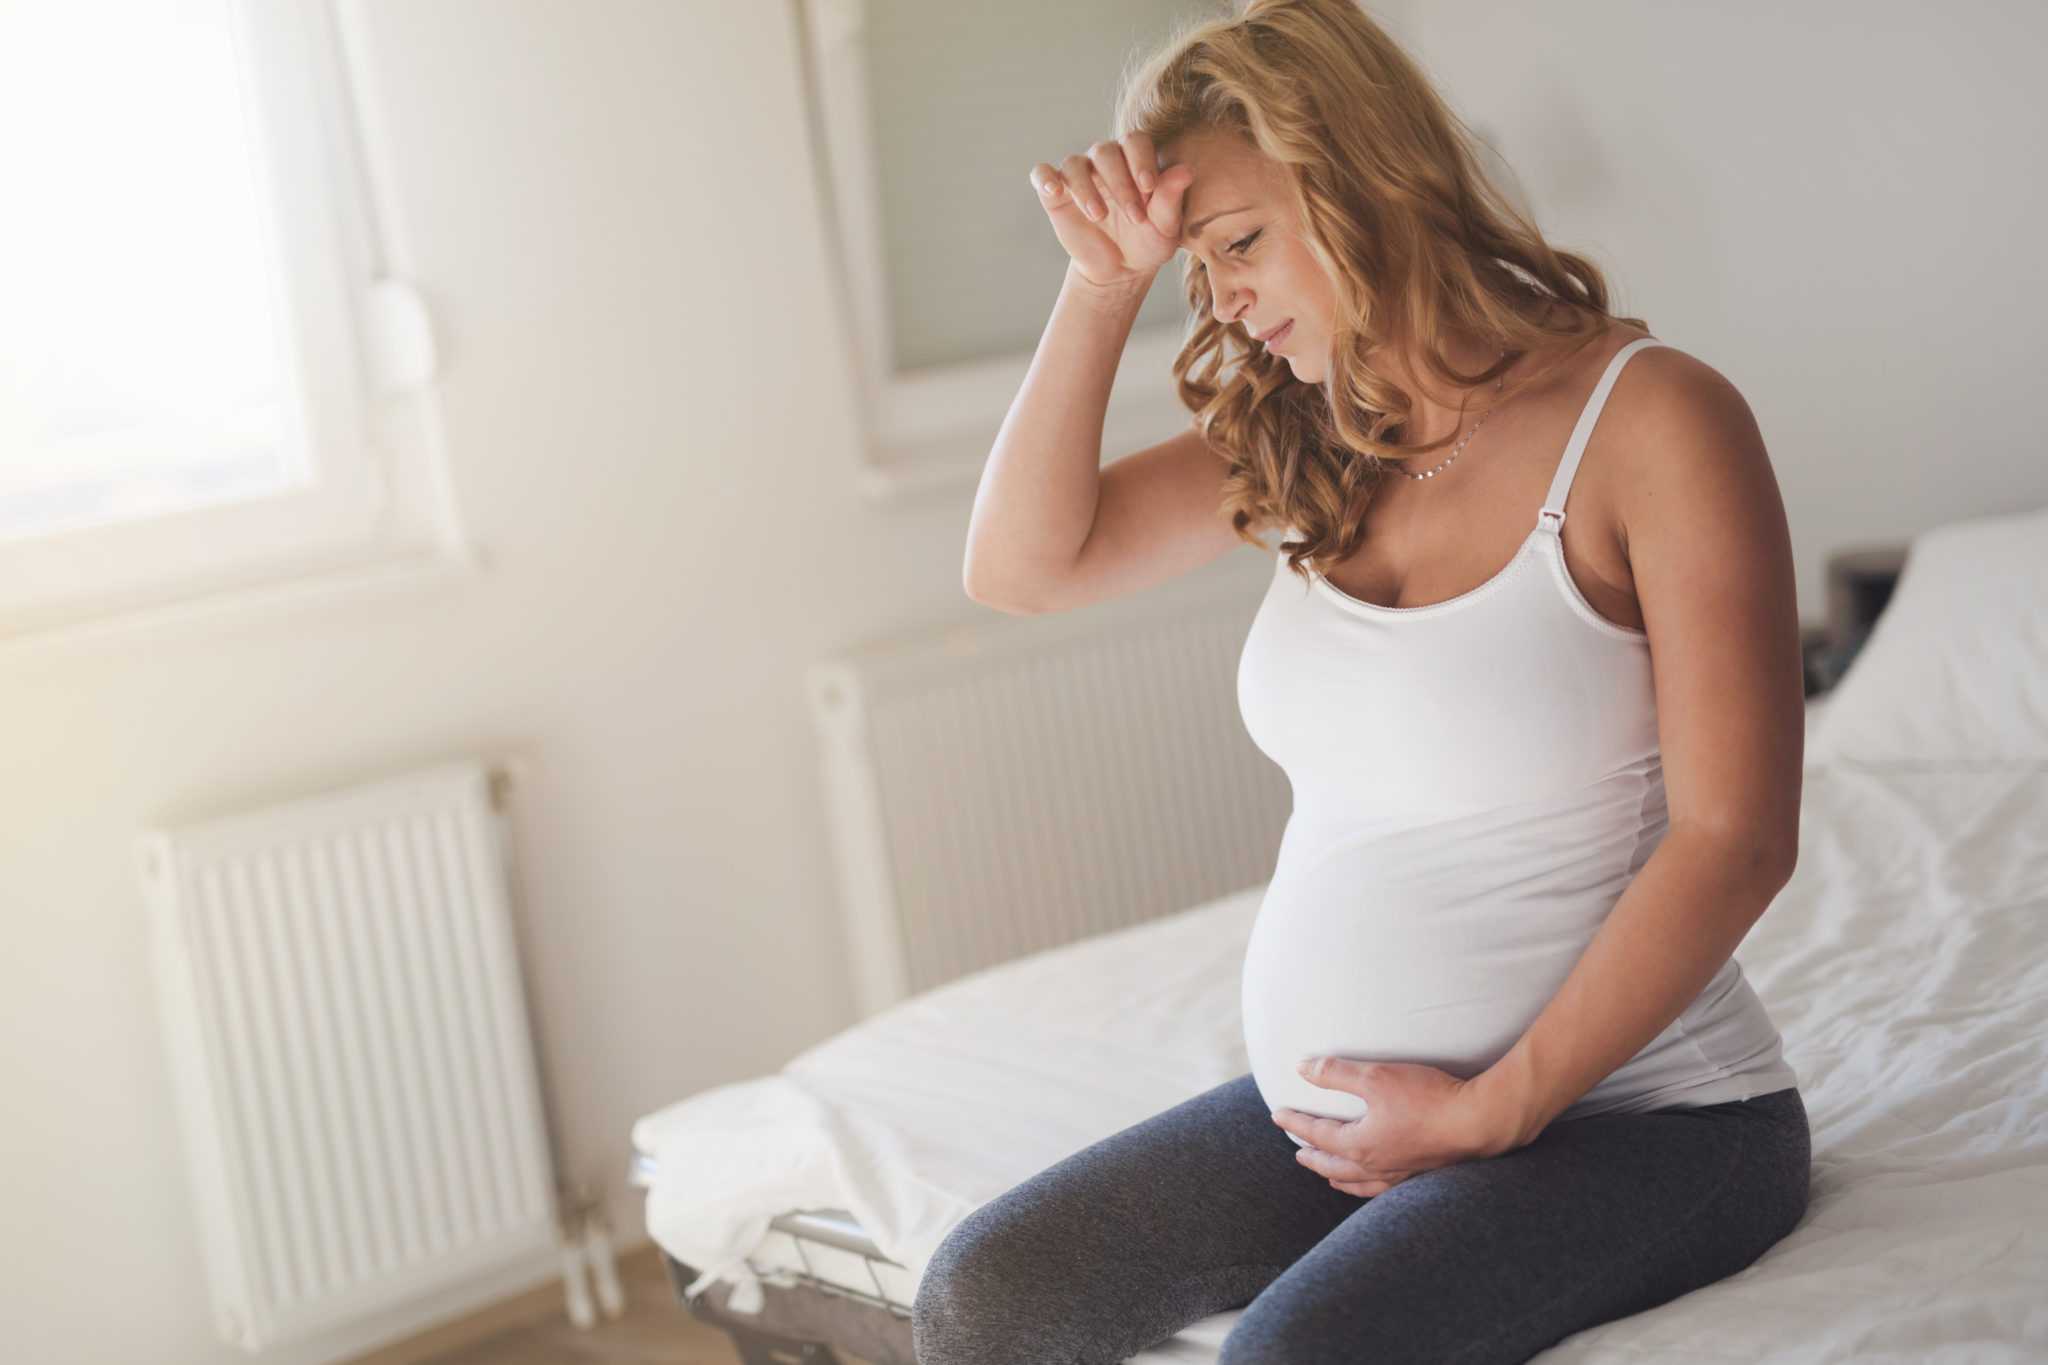 Страх беременности: почему у женщин возникает боязнь забеременеть, как с ним бороться, как избавиться от токофобии самостоятельно и с помощью психолога